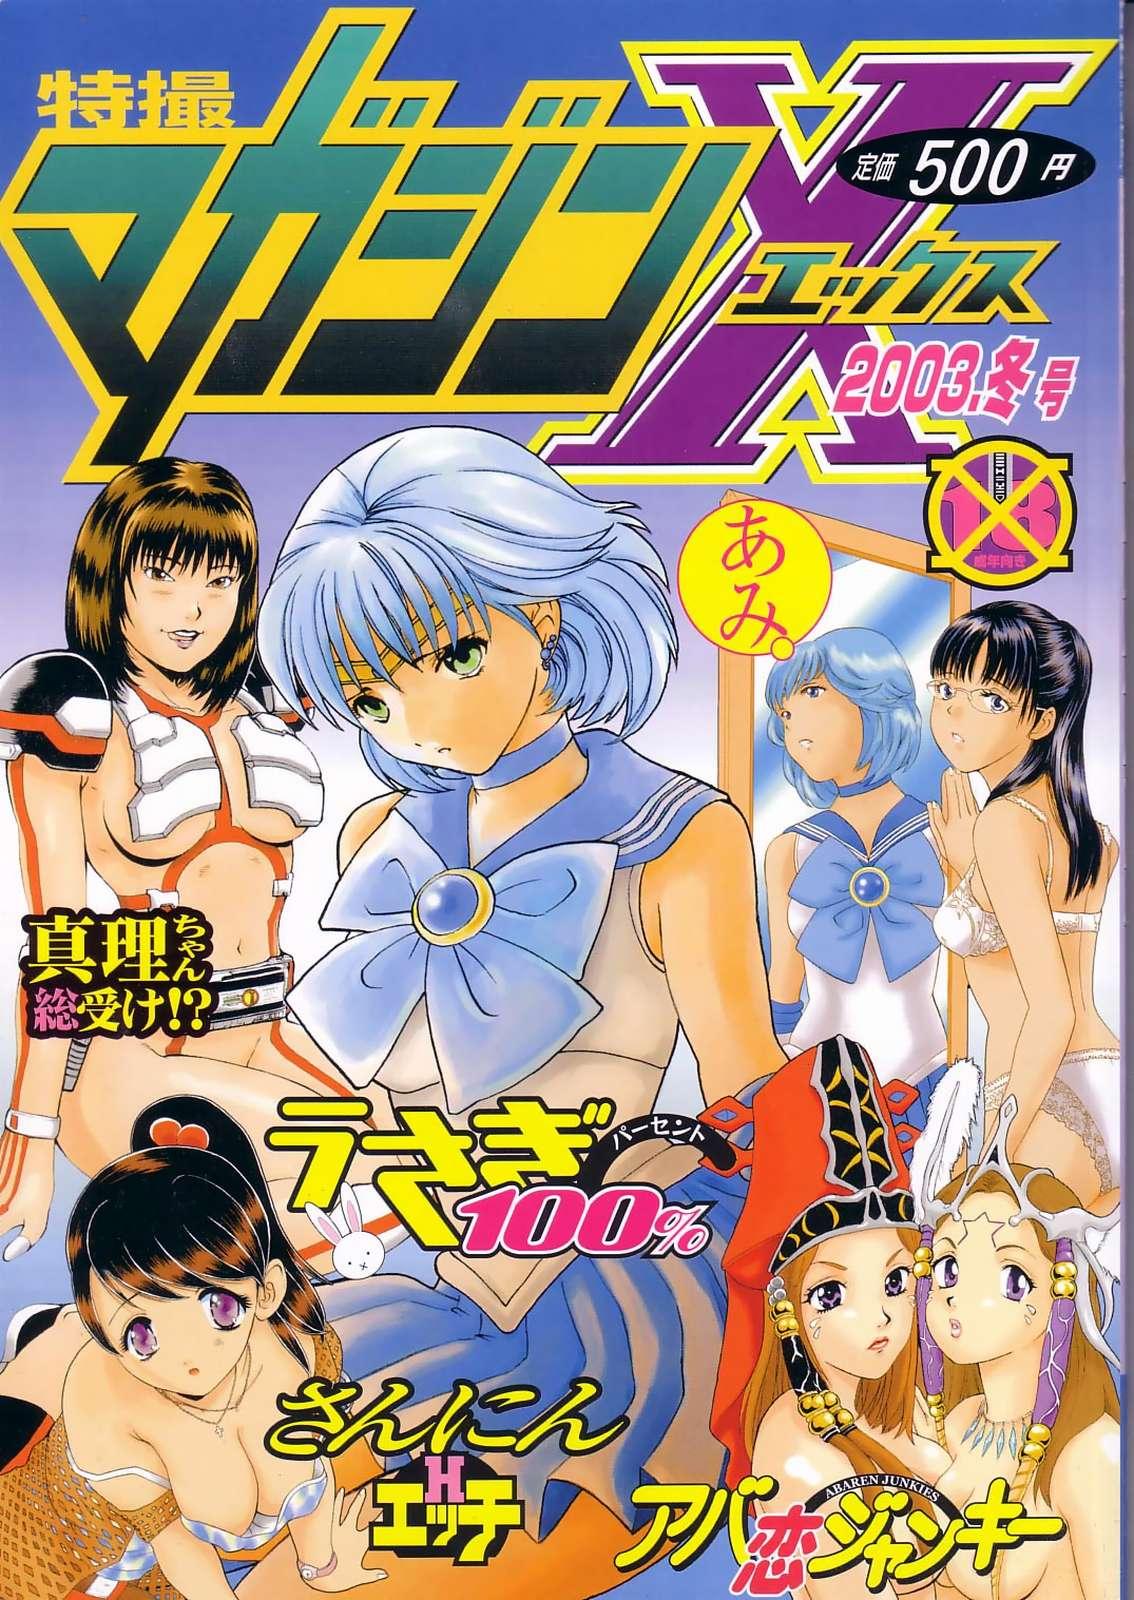 Messy Tokusatsu Magazine x 2003 Fuyu Gou - Sailor moon Ichigo 100 No Condom - Picture 1